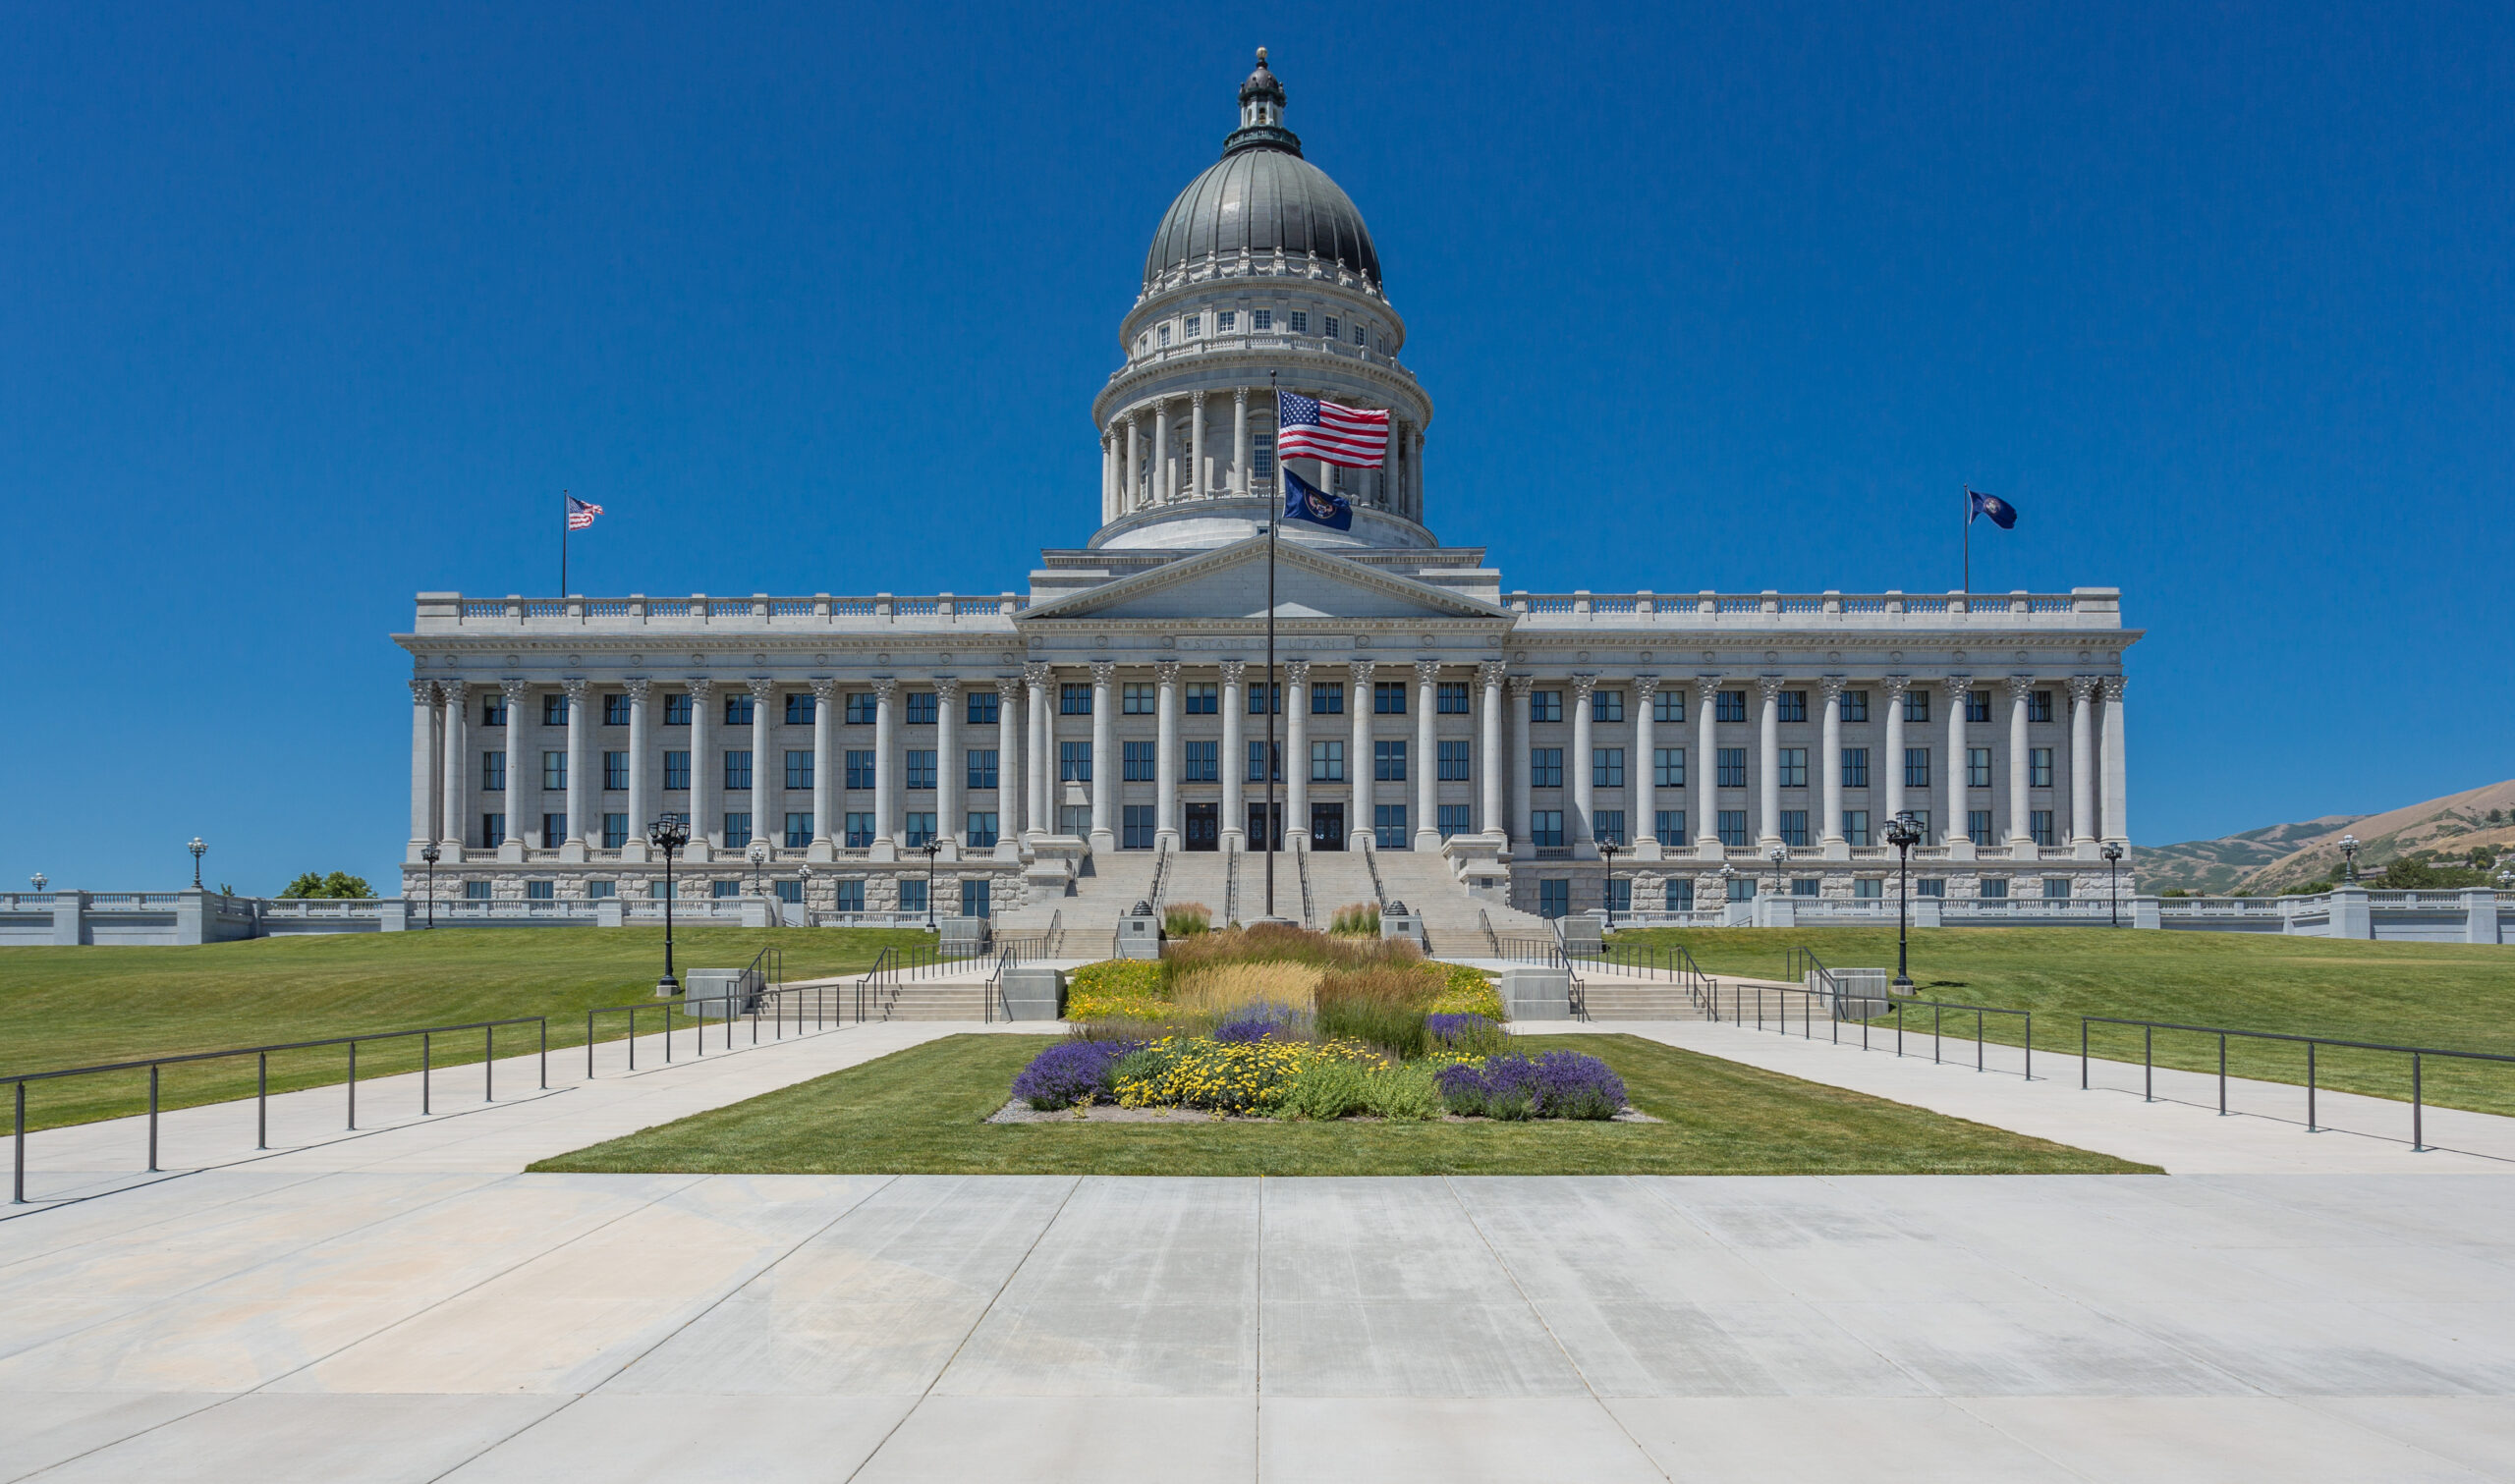 The Utah state capitol building in Salt Lake City, Utah.